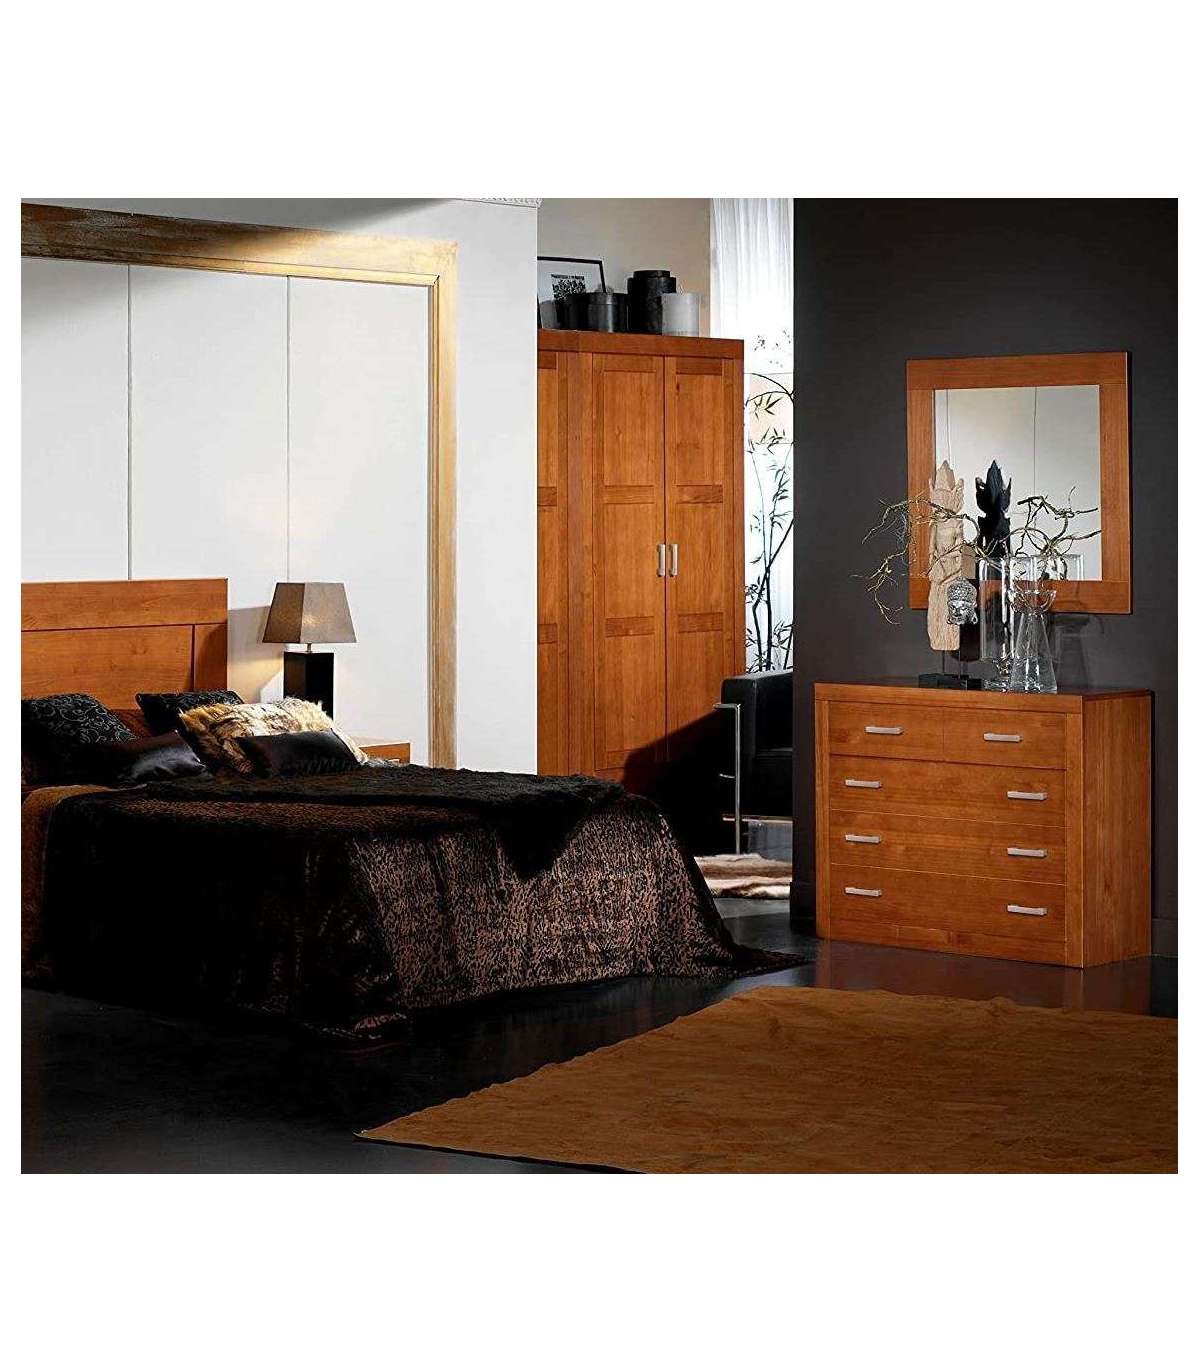 comoda blanca dormitorio con 4 cajones de madera de pino maciza